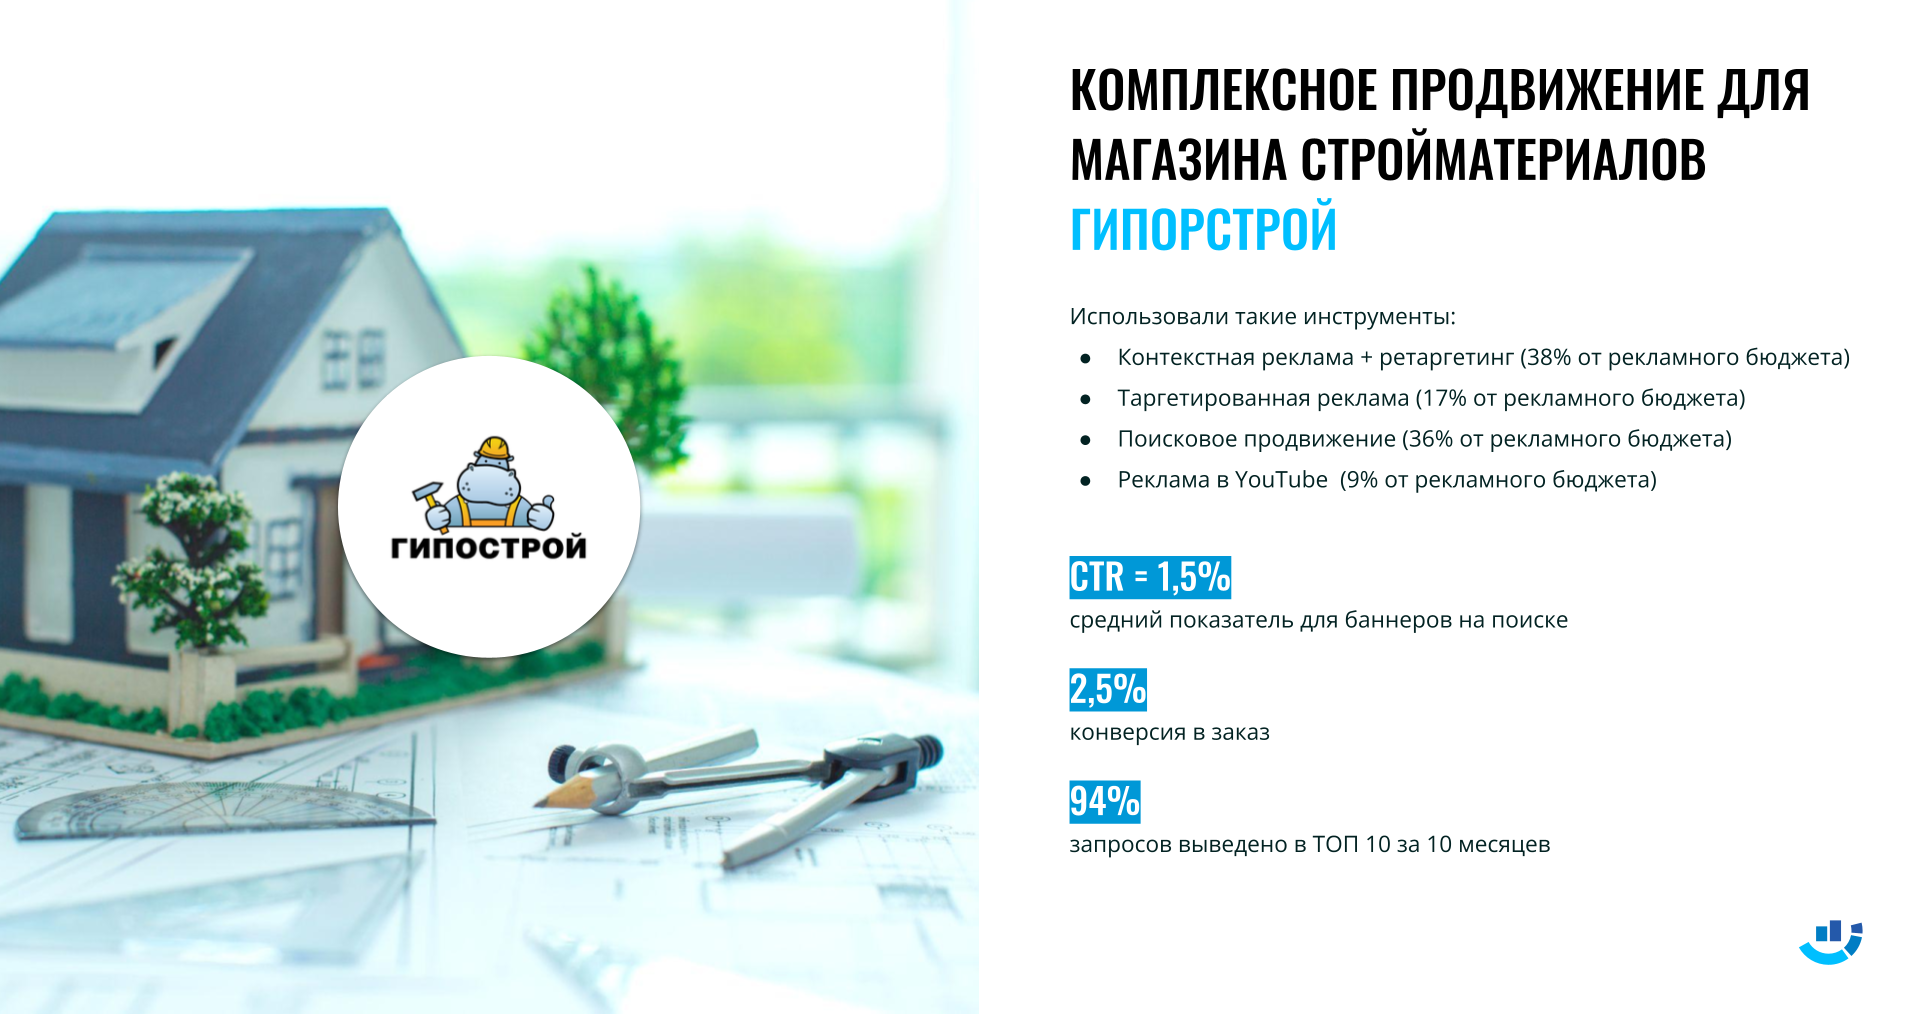 Кейс интернет-реклама и продвижение интернет-магазина строительных материалов Gipostroy